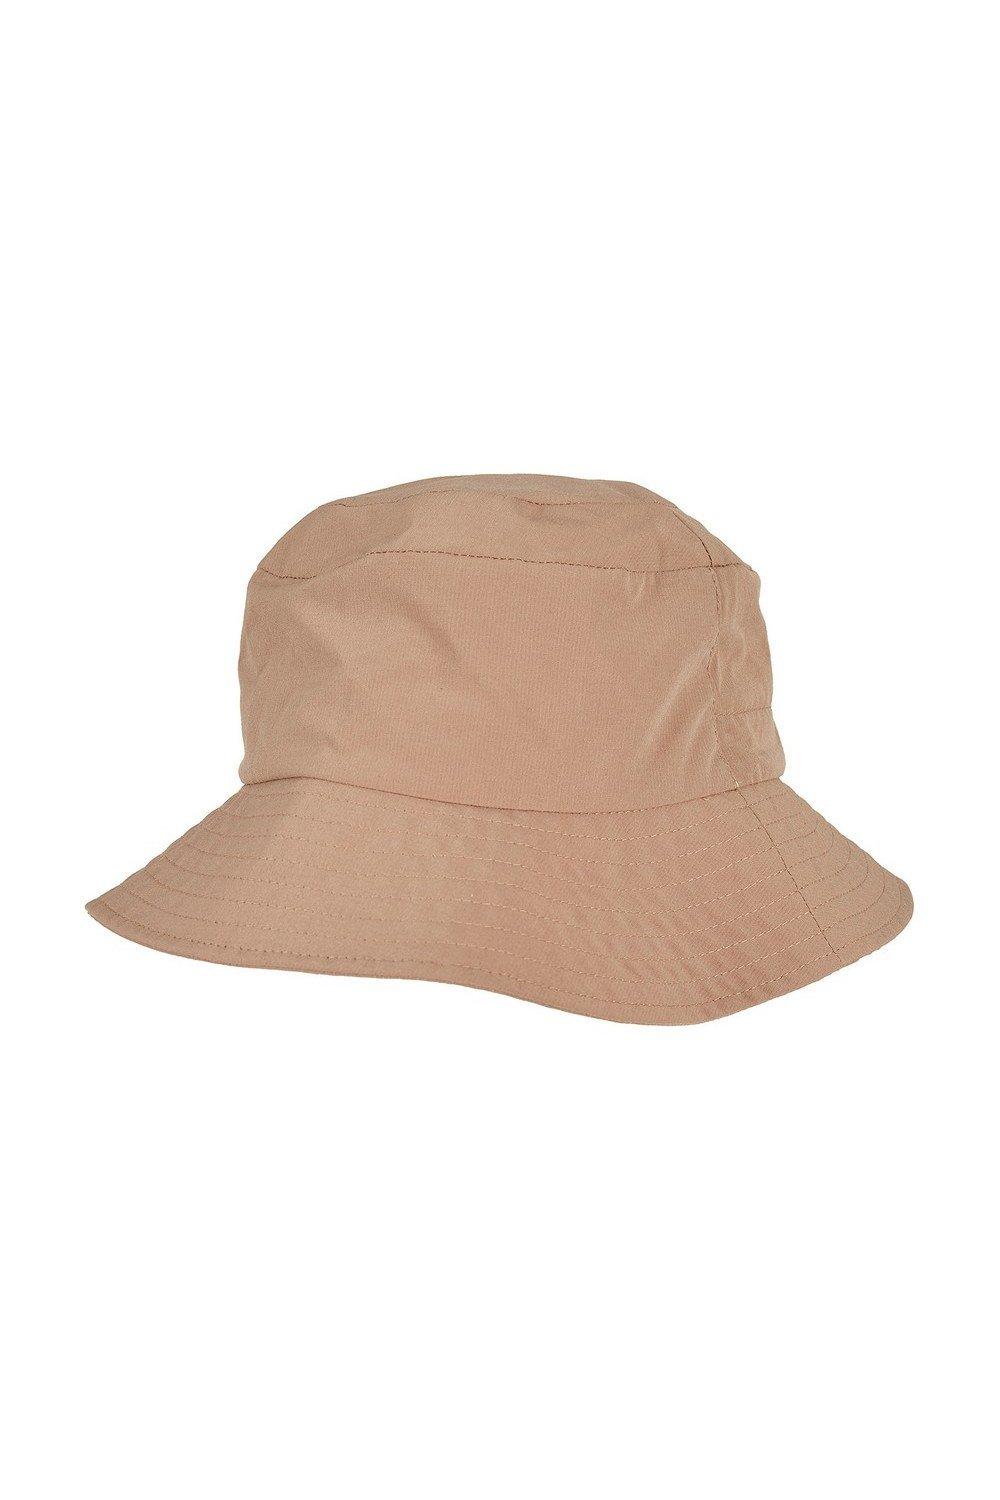 Yupoong Flexfit Bucket Hat|beige